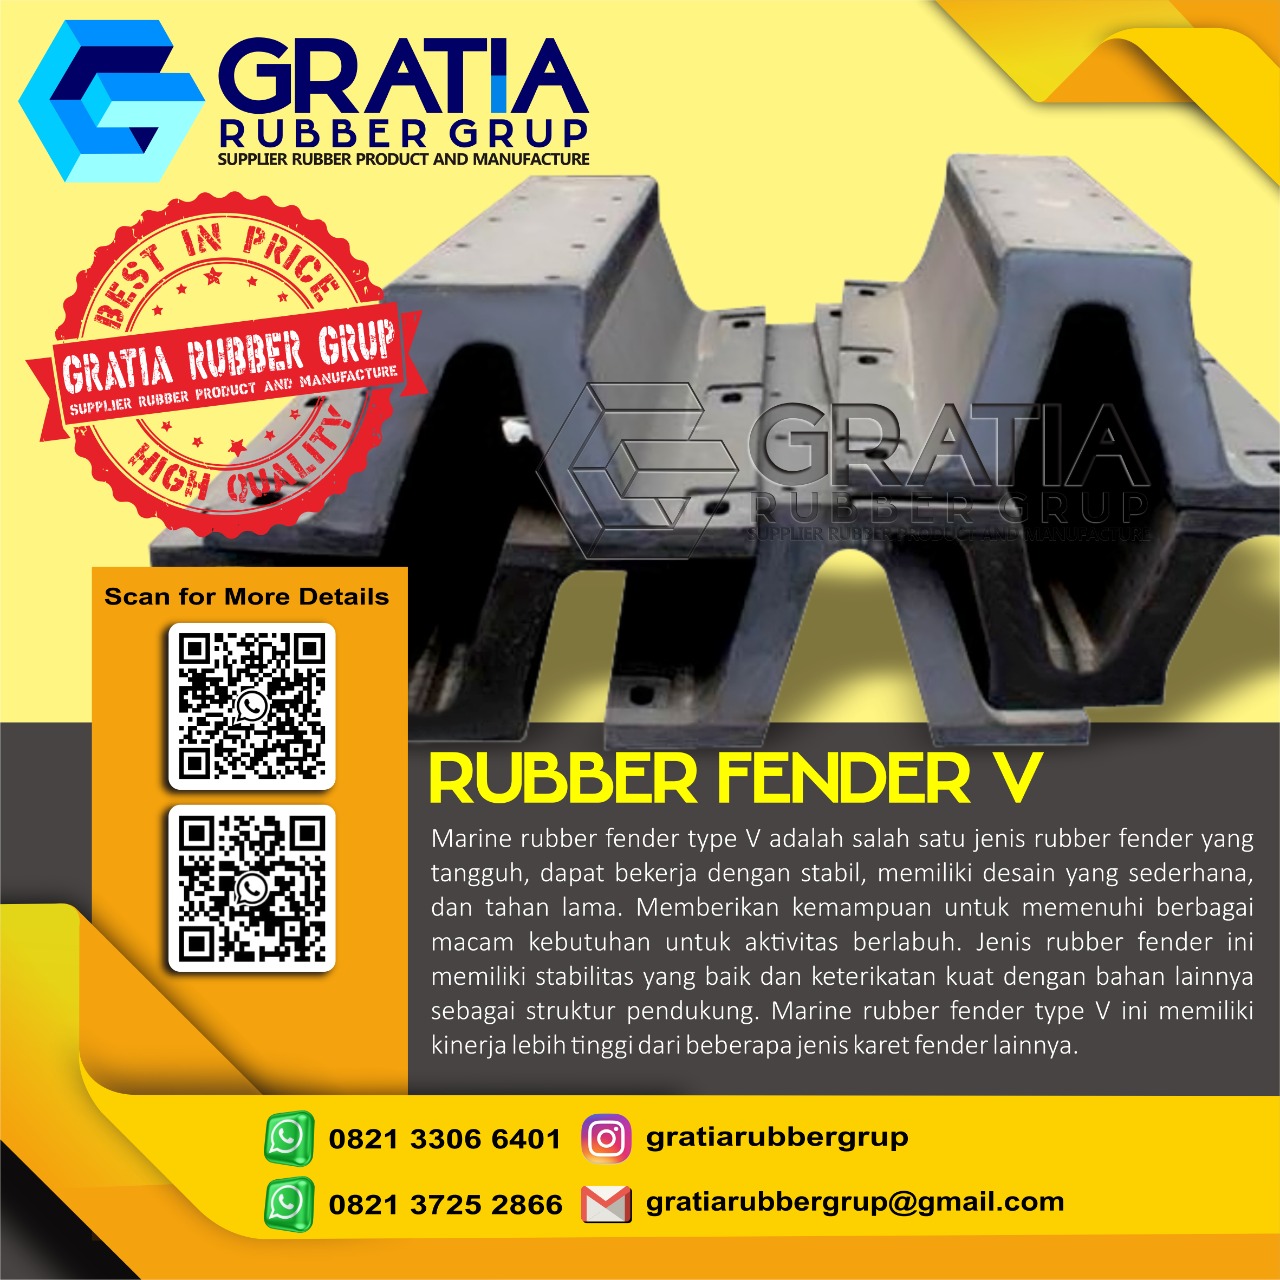 Distributor Rubber Fender Terbaik  Melayani Pengiriman Ke Mamuju Tengah Sulawesi Hub 0821 3306 0461